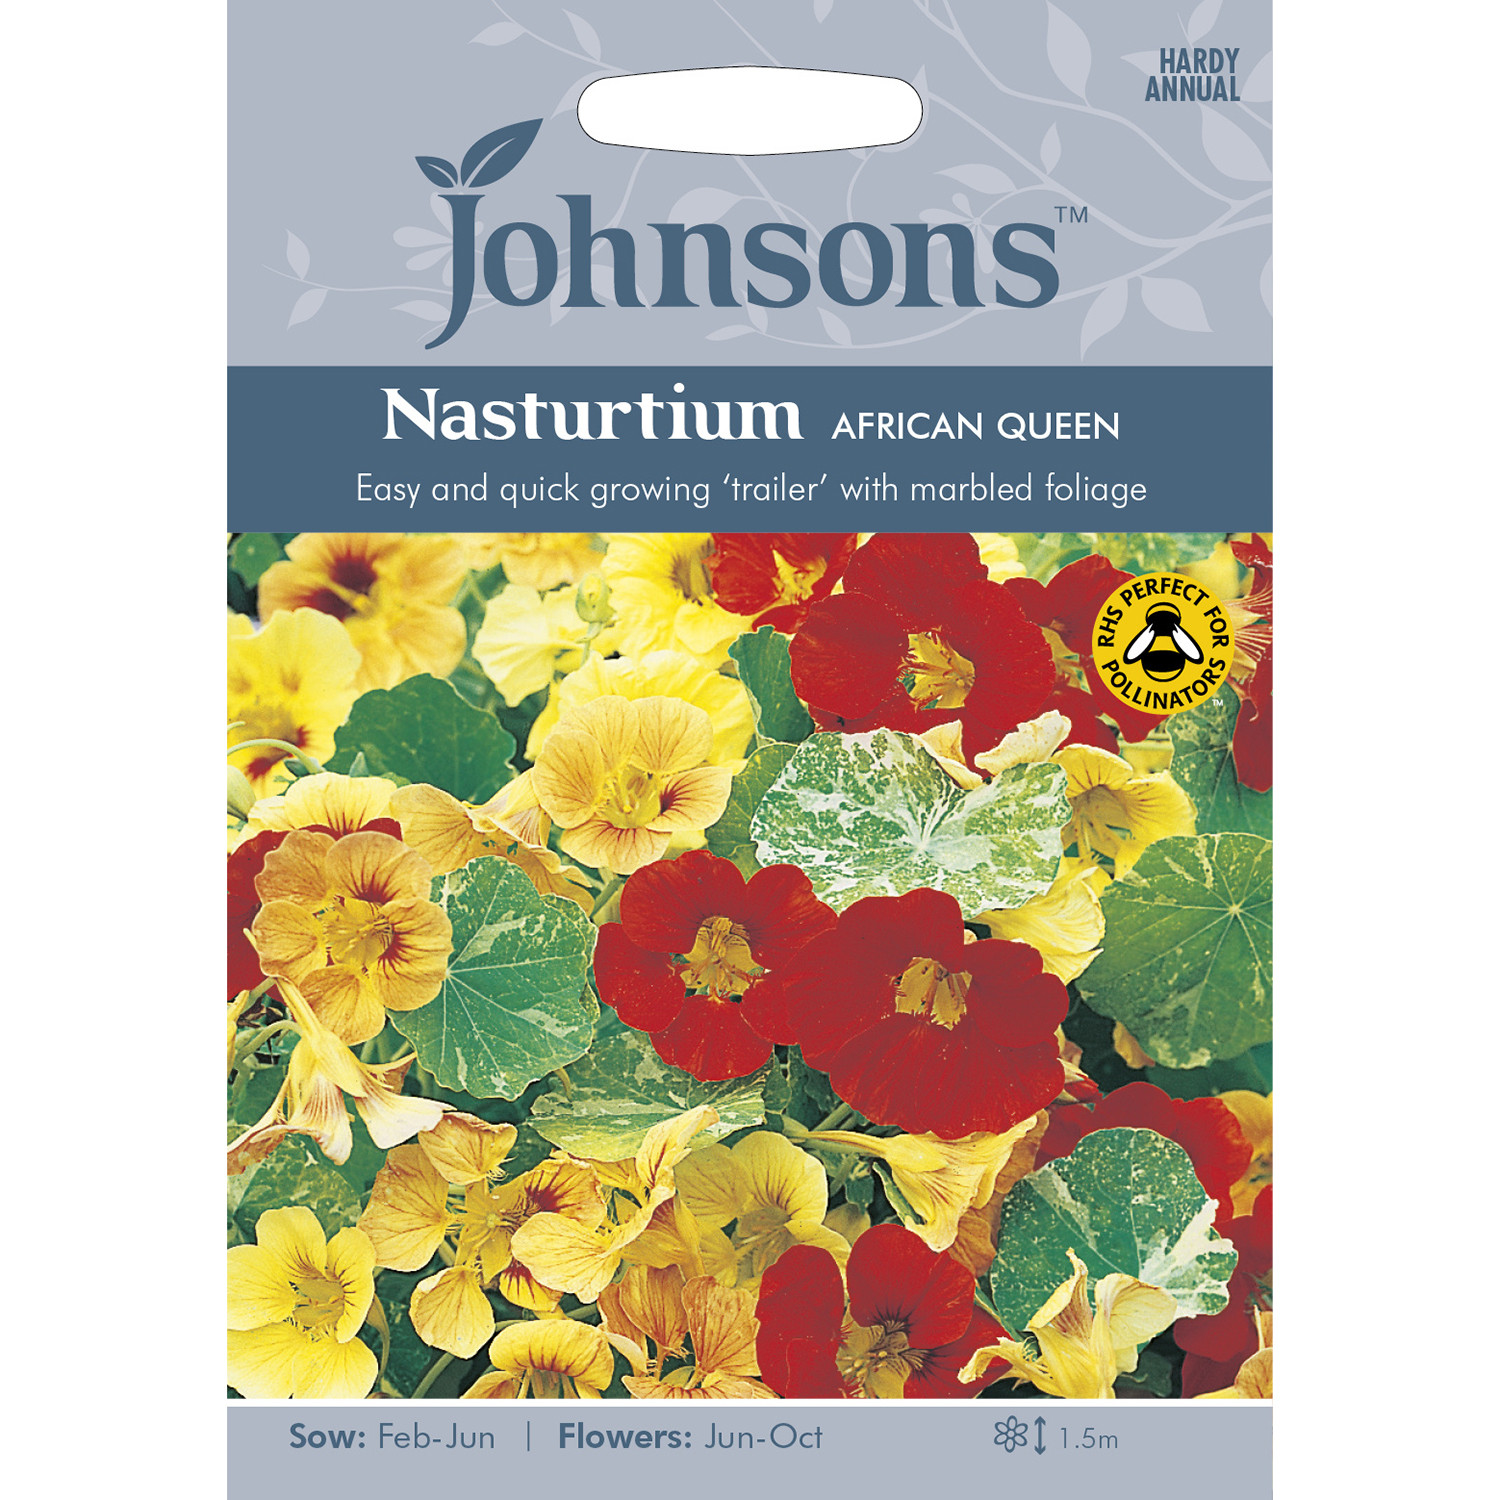 Johnsons Nasturtium African Queen Flower Seeds Image 2